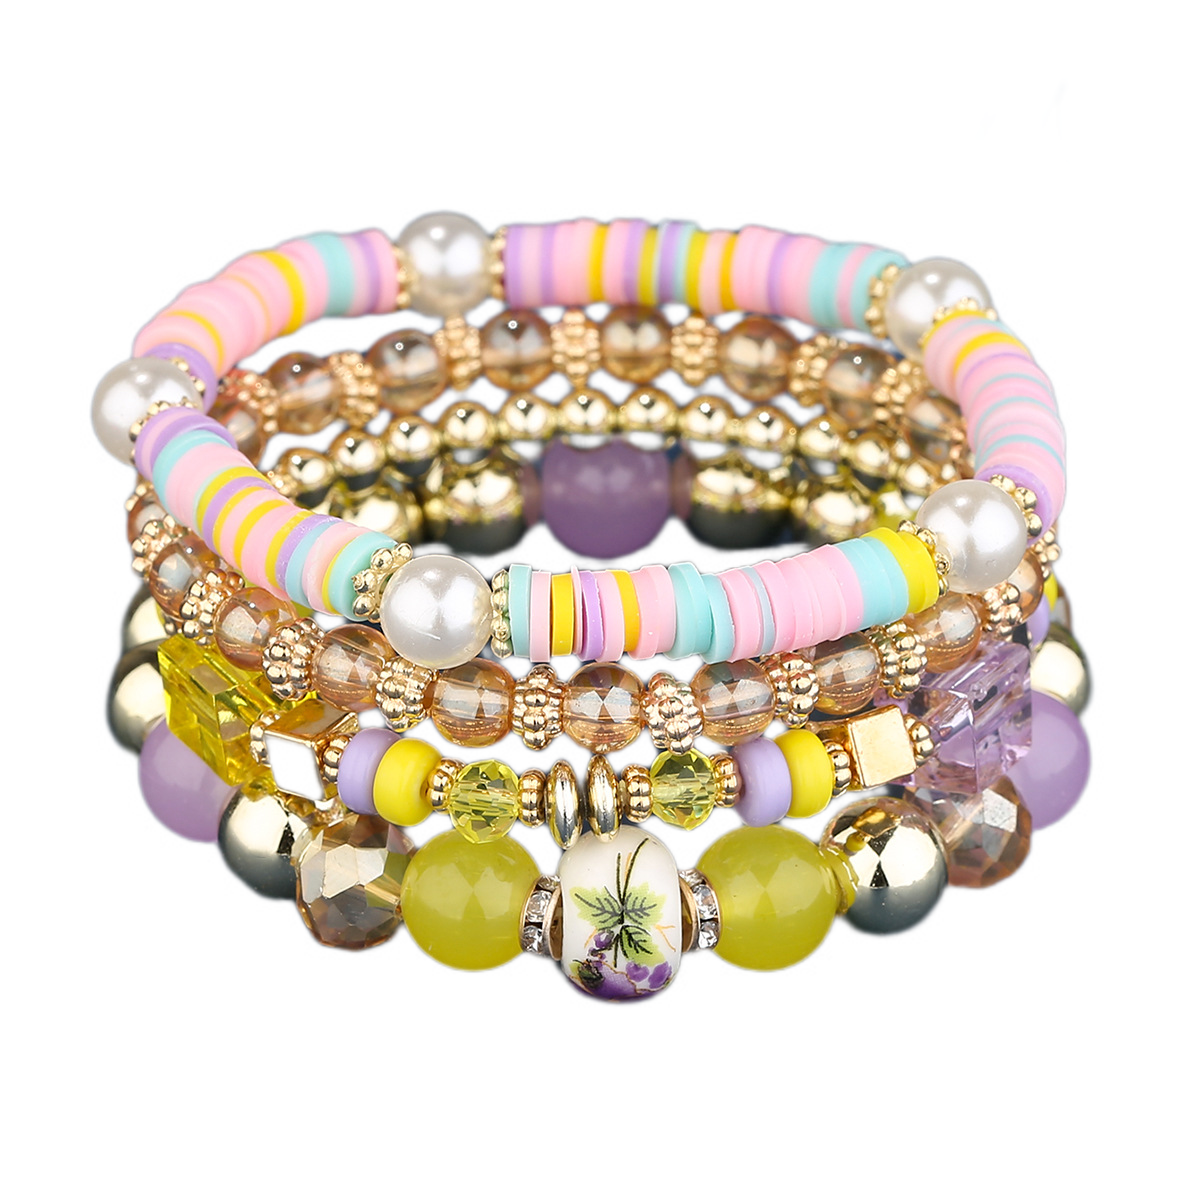 Women's Stretch Bracelets, Multi-layered Colorful Bead Bracelets